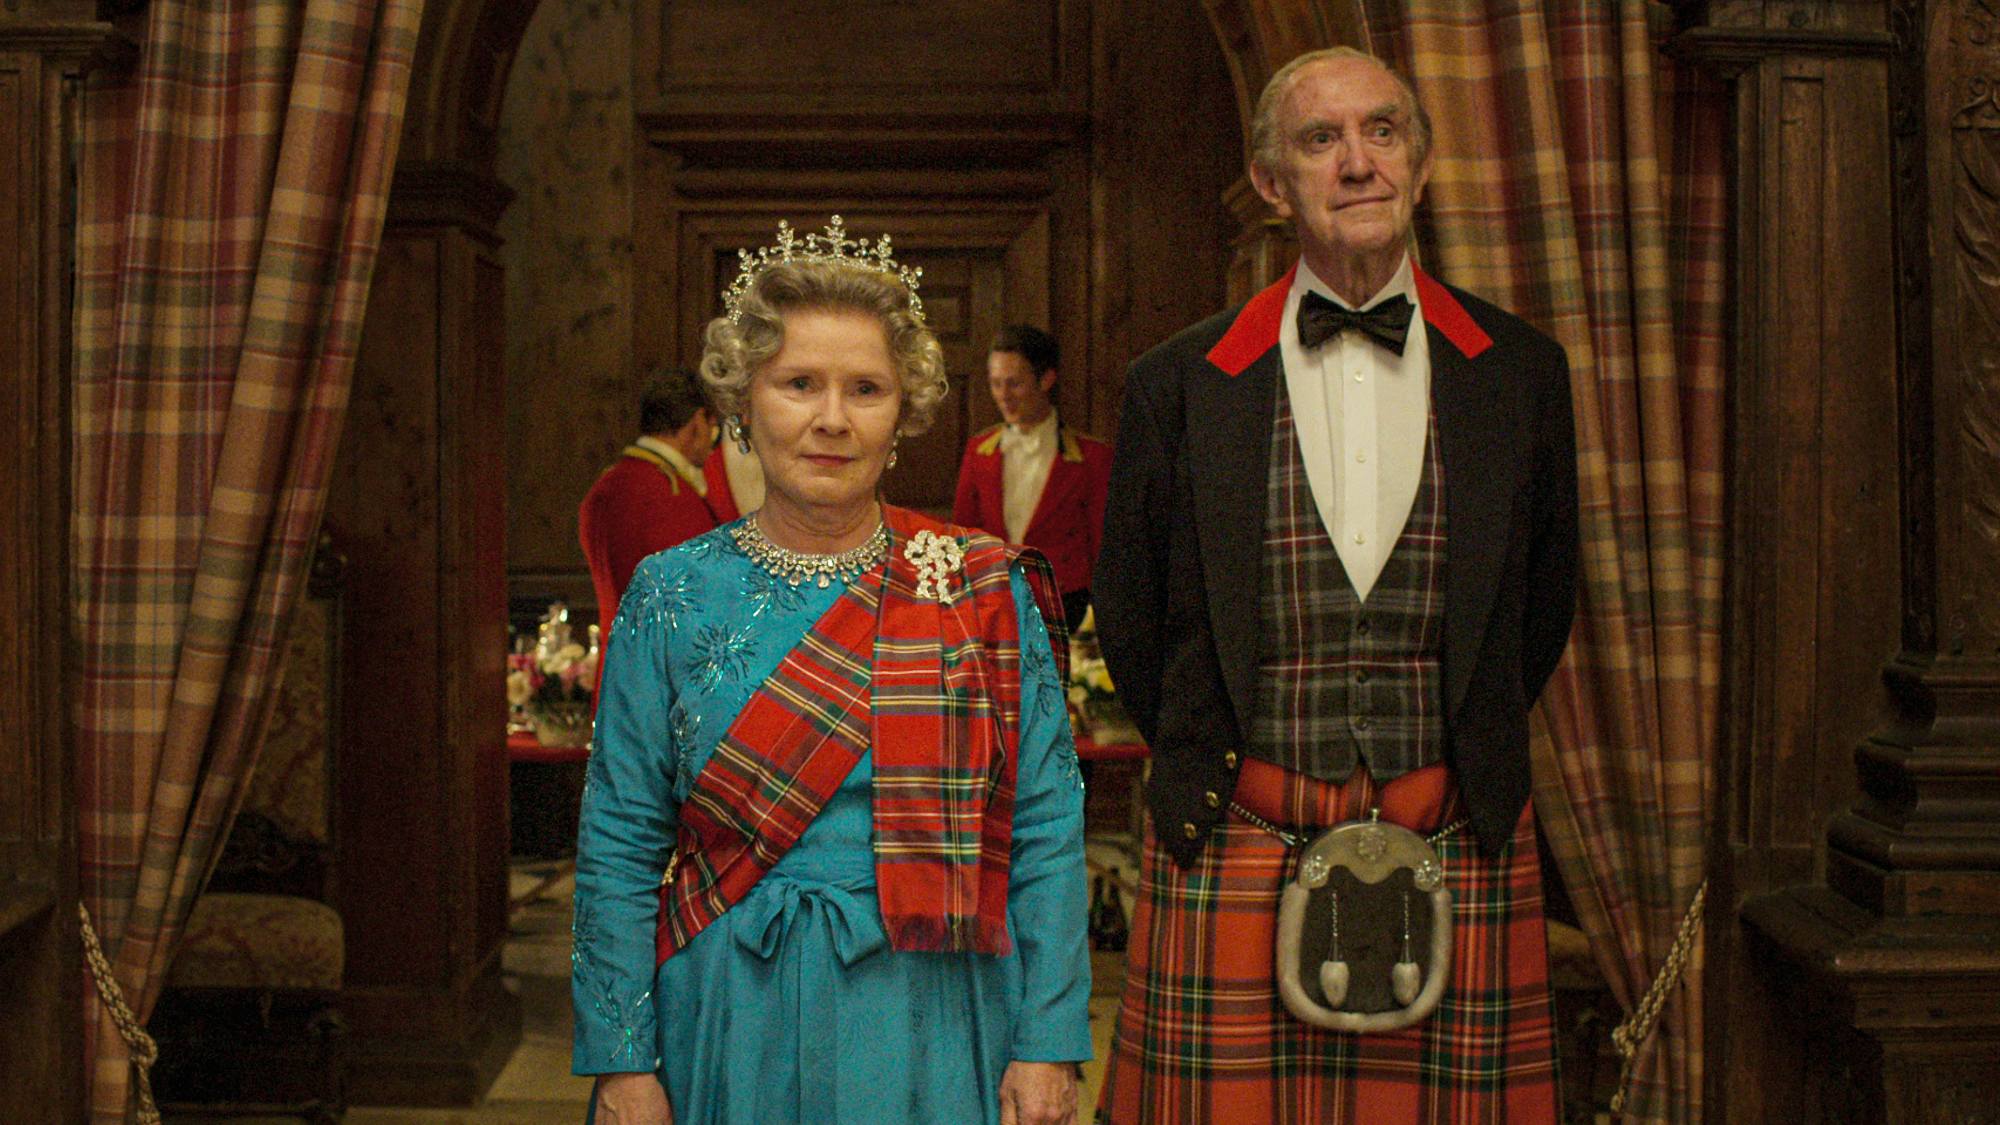 إيميلدا ستونتون في دور الملكة إليزابيث الثانية وجوناثان برايس في دور الأمير فيليب وهو يرتدي التنانير والشعارات الاسكتلندية في موسم التاج الخامس